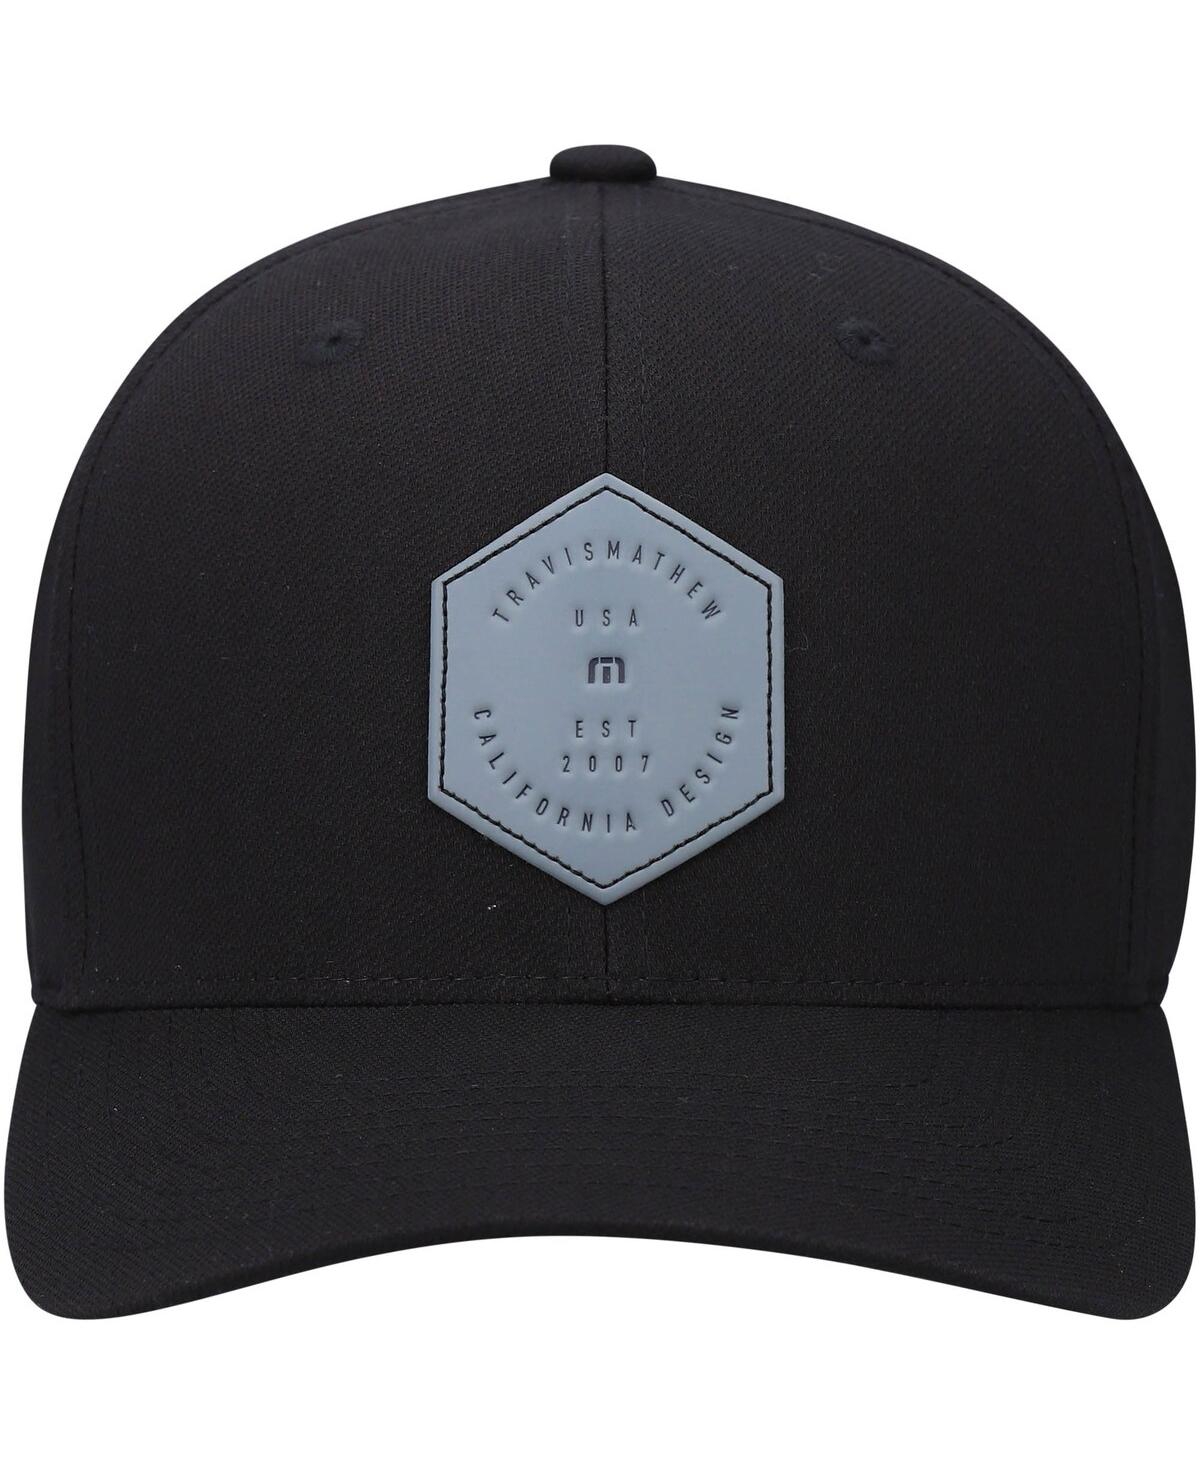 Shop Travis Mathew Men's Travismathew Black Dopp Tri-blend Flex Hat